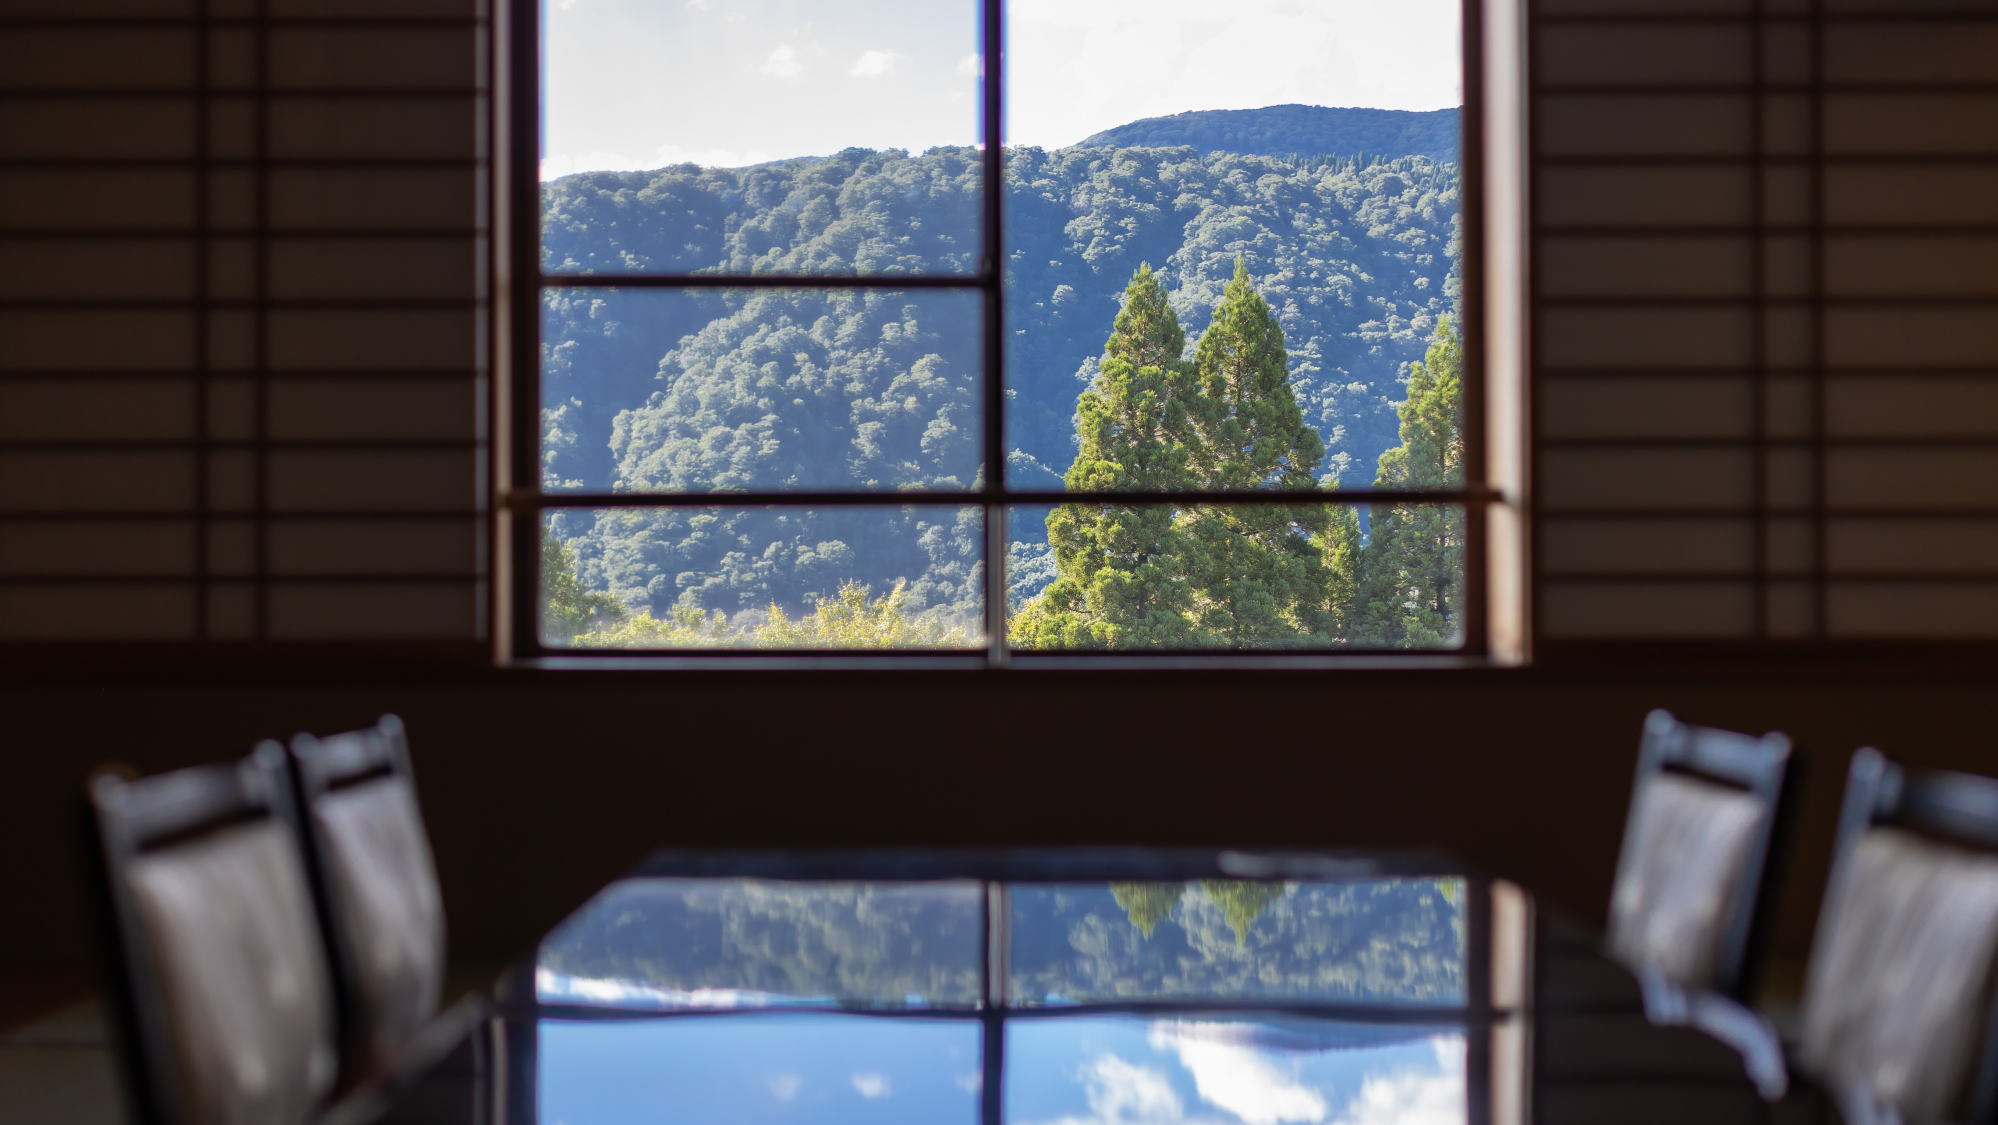 田沢湖高原の雄大な山々を最上階から眺めながら、開放感のある客室で寛ぎのひと時をお過ごしください。